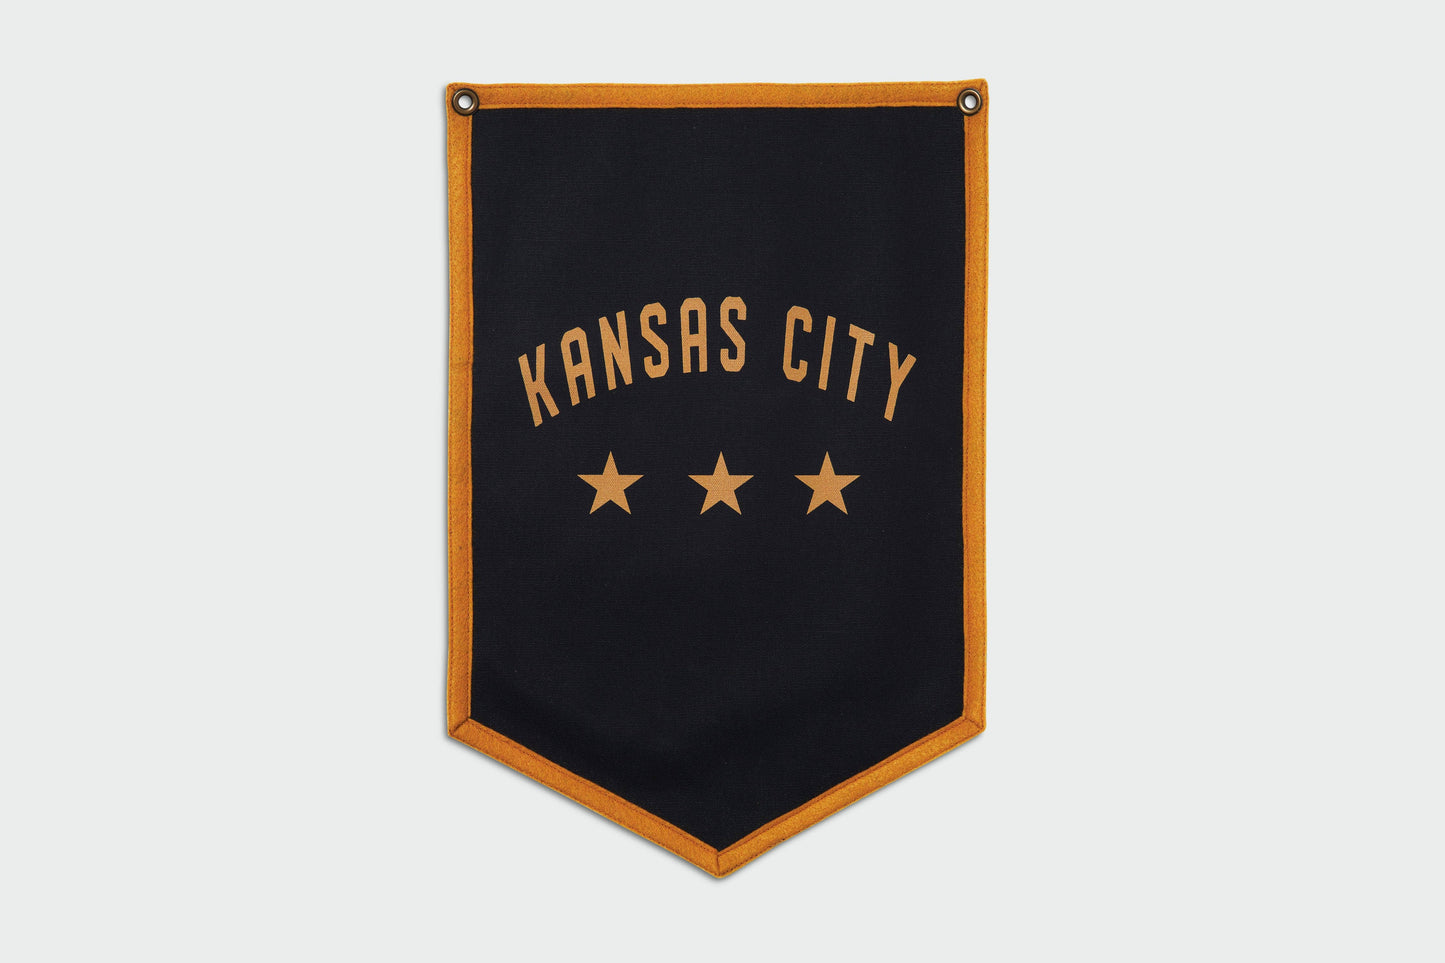 Kansas City Black Banner